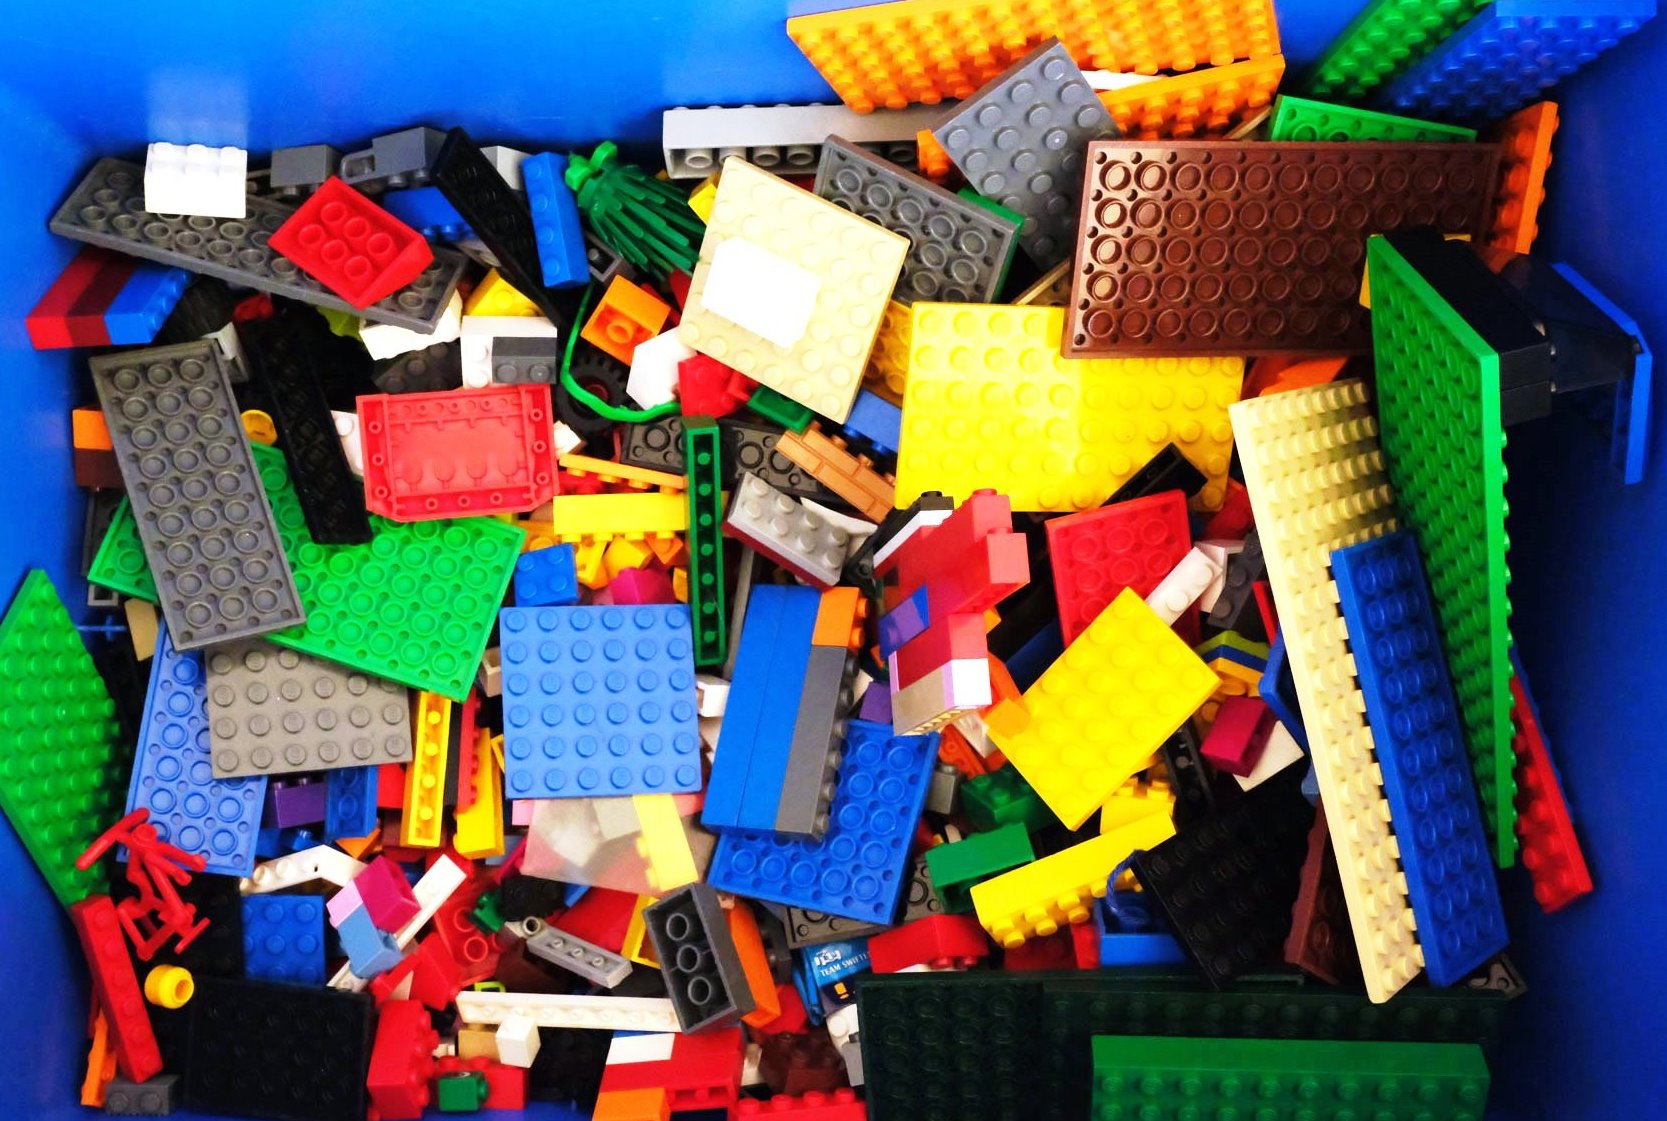 Blick in eine blaue Kiste gefüllt mit Lego-Bausteinen.